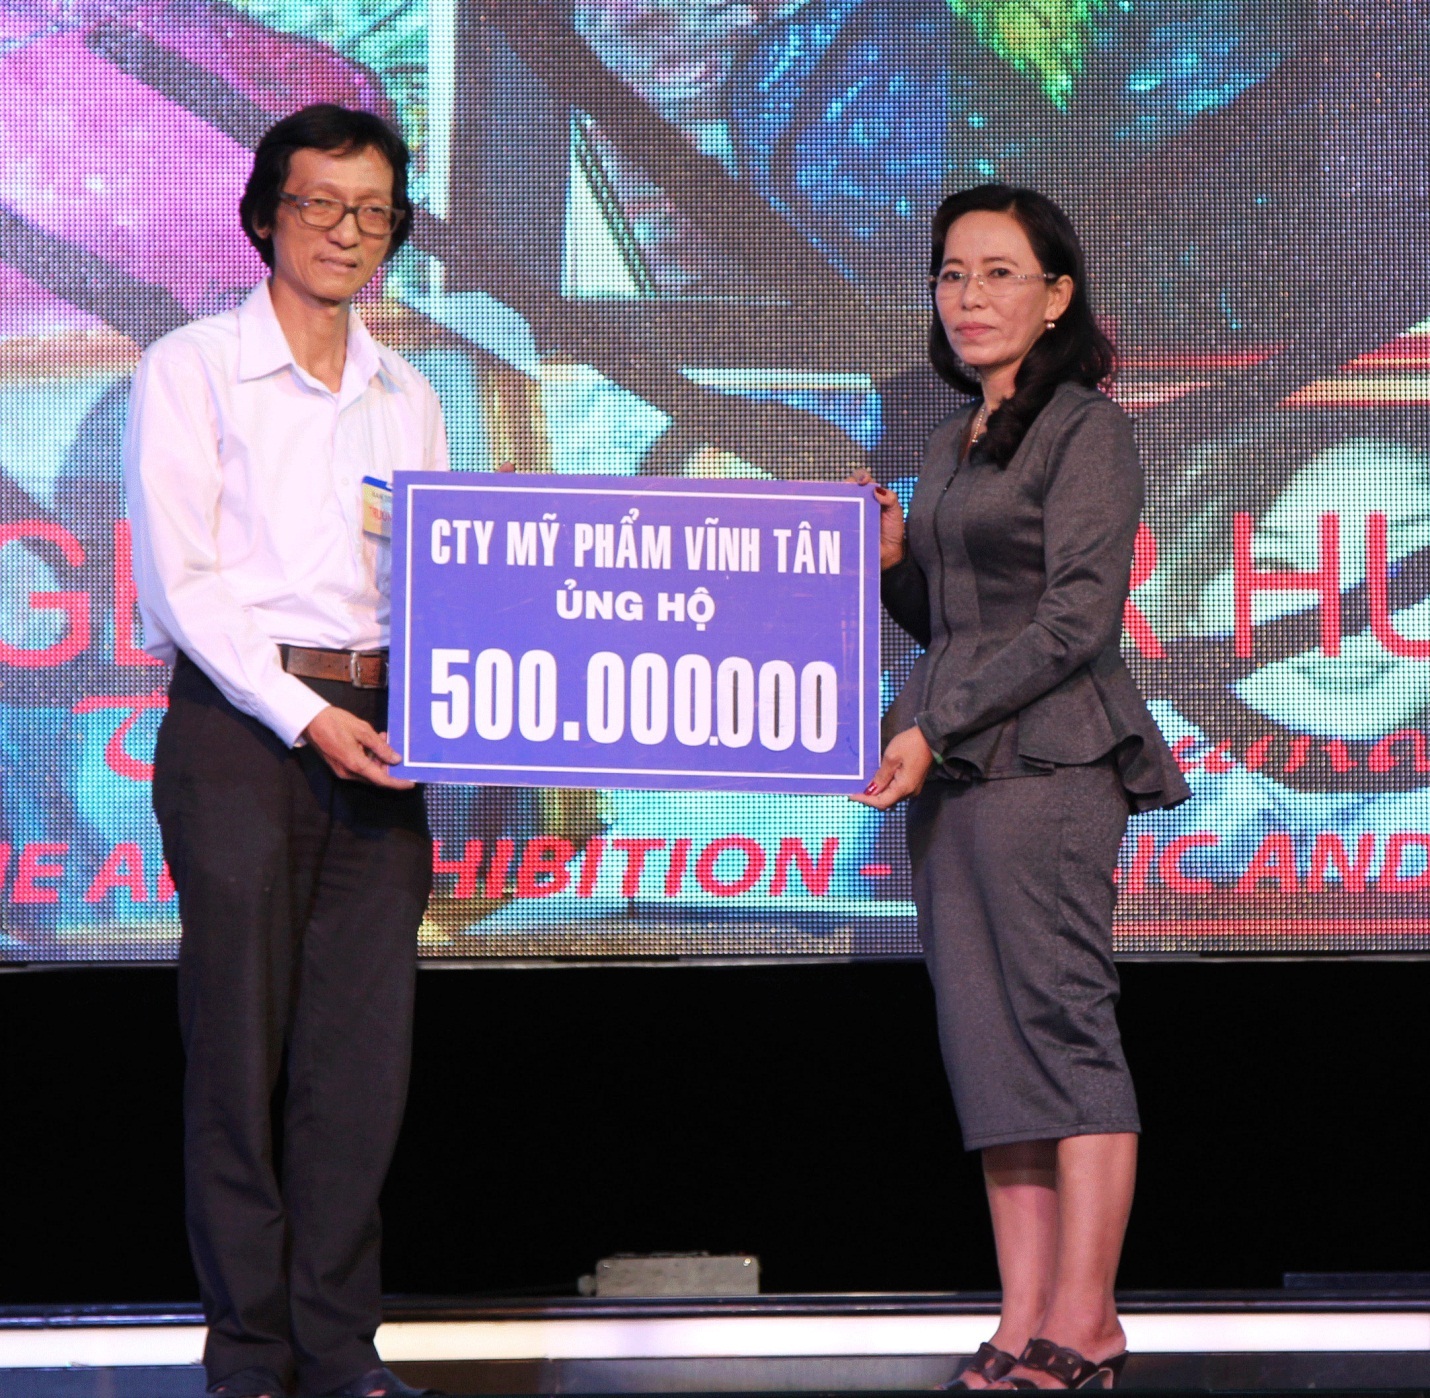 Bà Võ Thị Liễu trao tặng bảng tiền cho họa sĩ Lê Phương